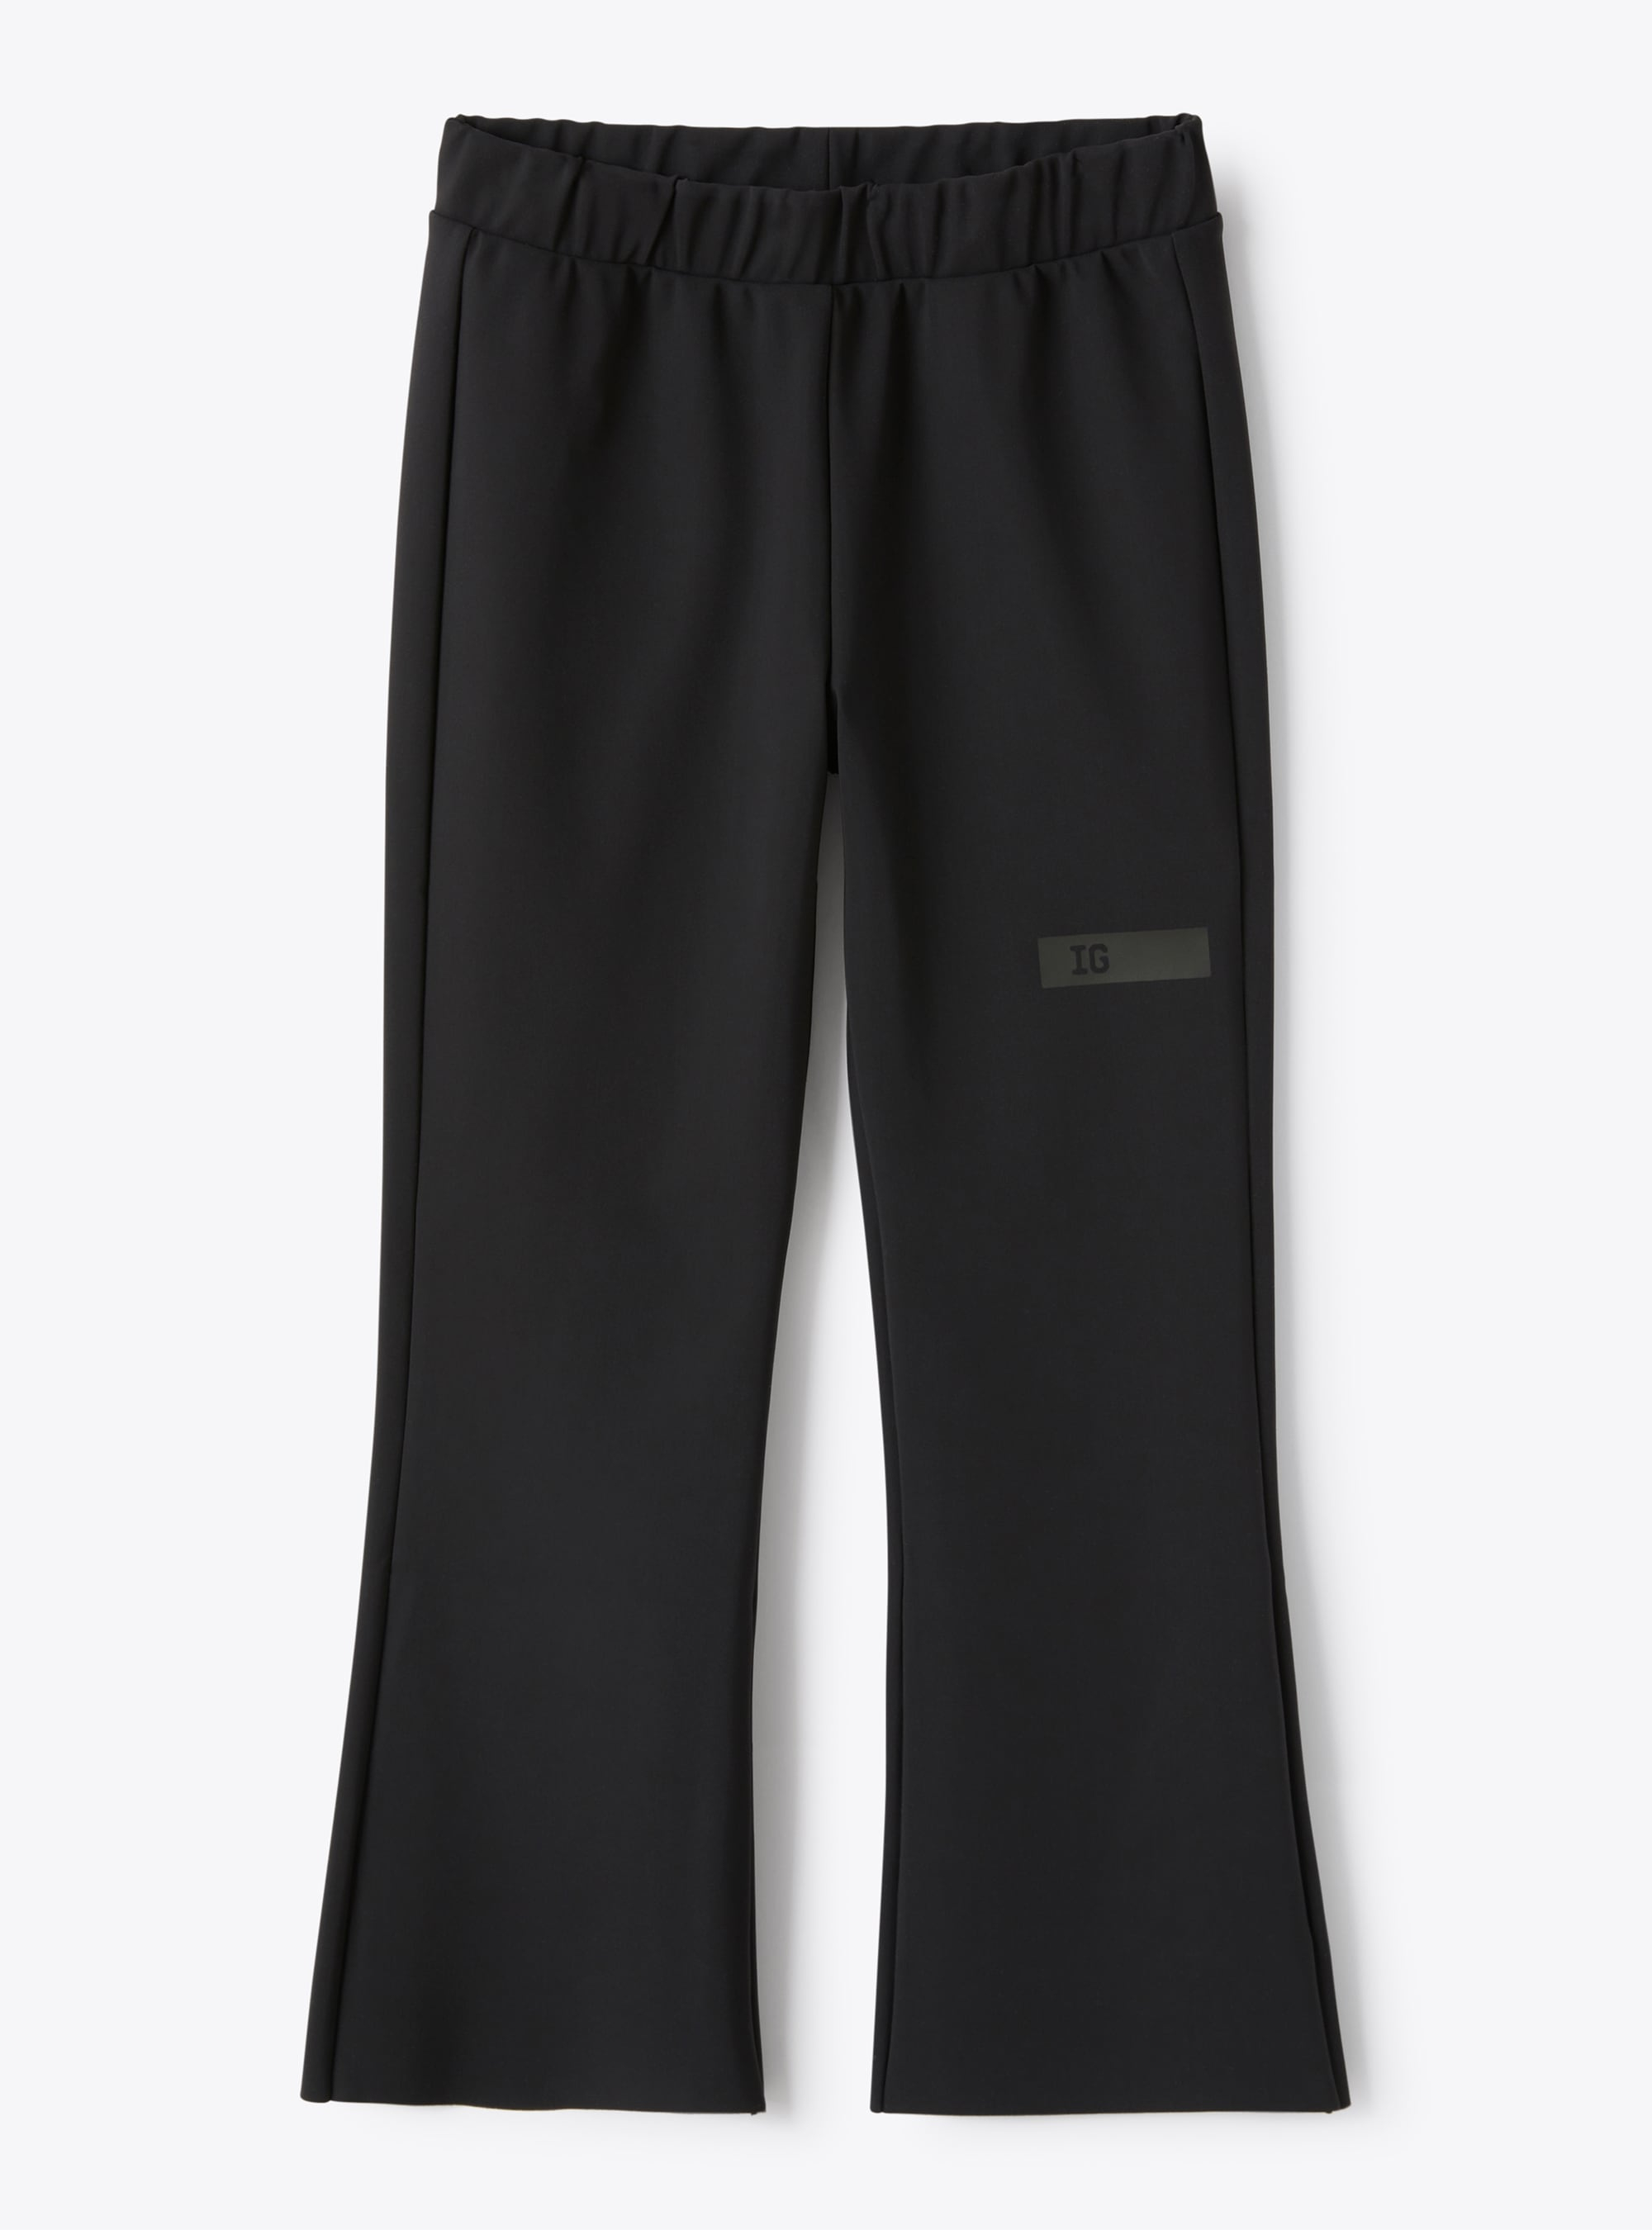 Trousers in black Sensitive® Fabrics material - Black | Il Gufo